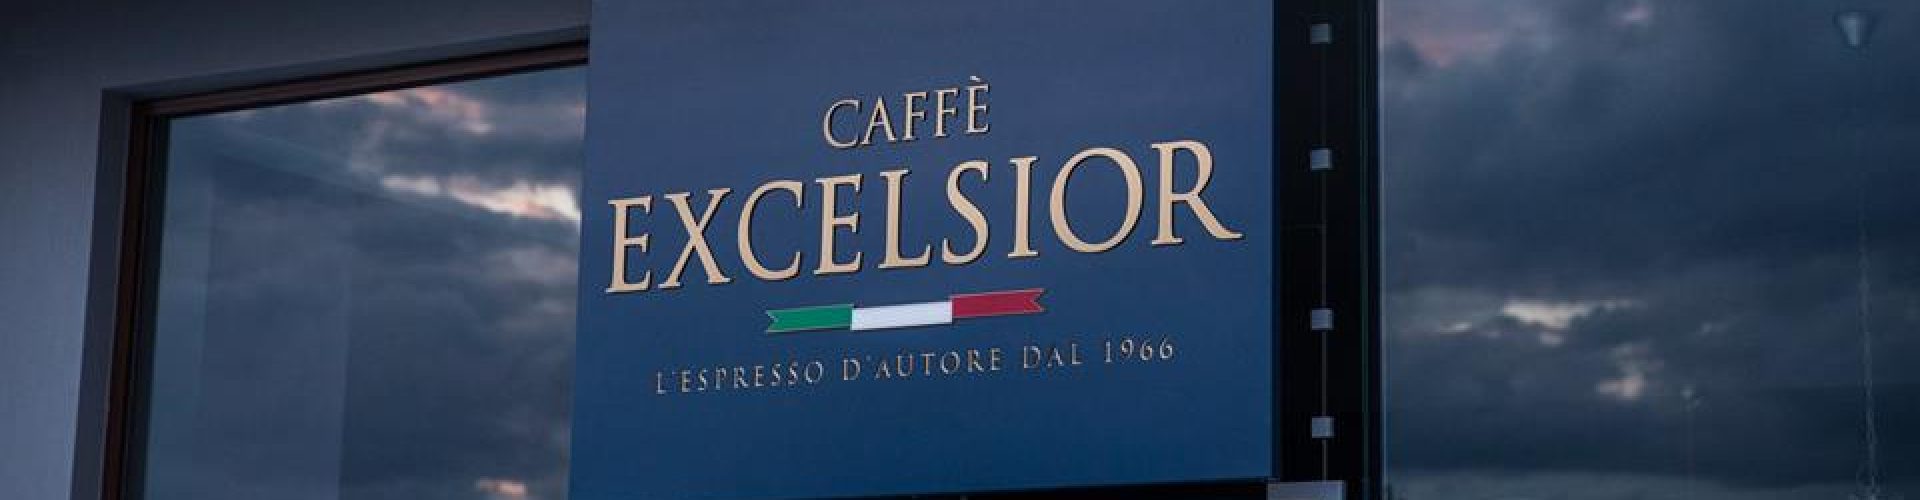 excelsior-door.jpg